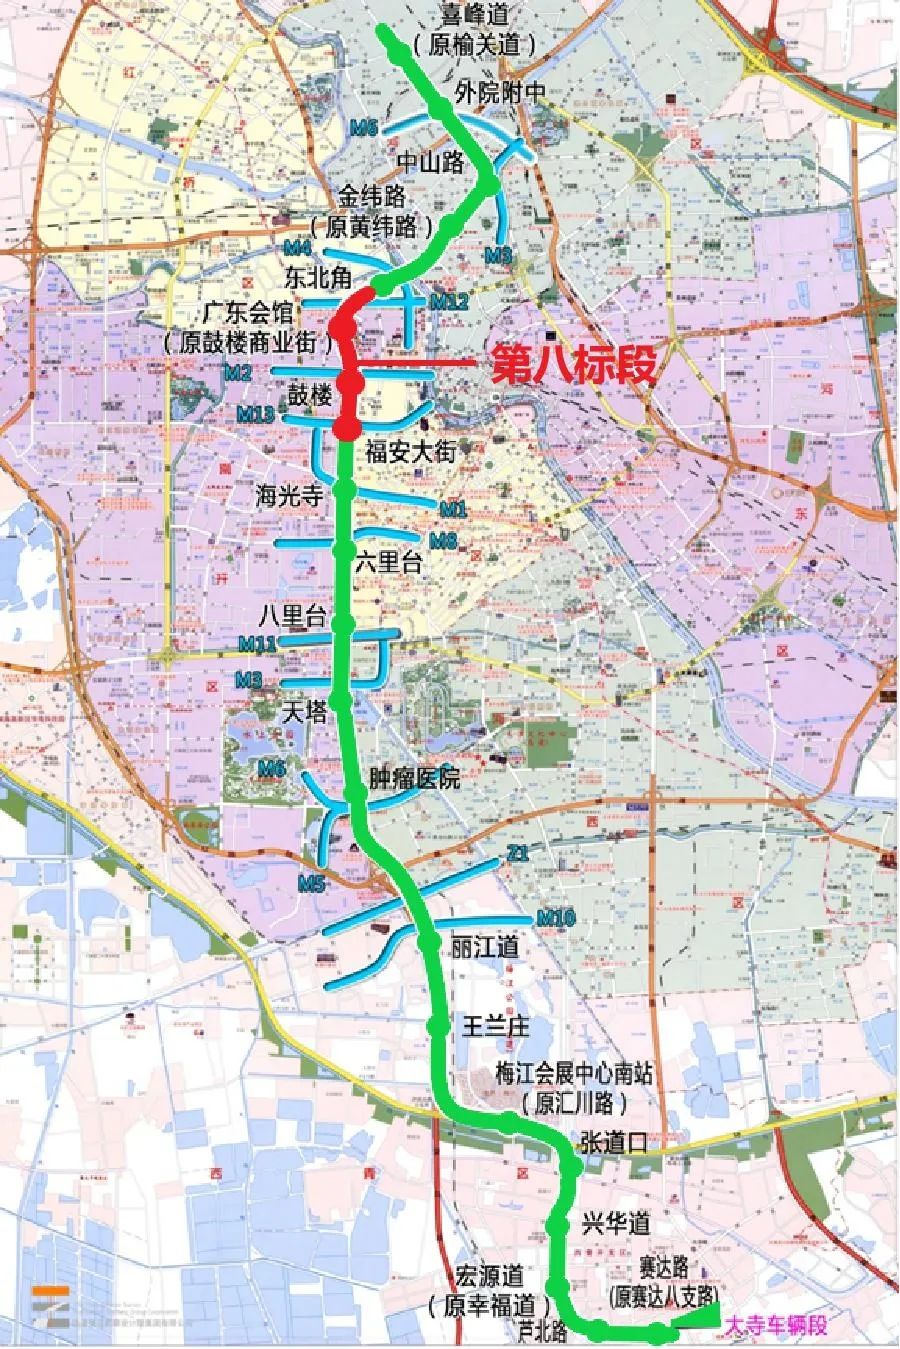 基建投公司承建天津轨道交通7号线8标段包含三站三区间是天津中心城区